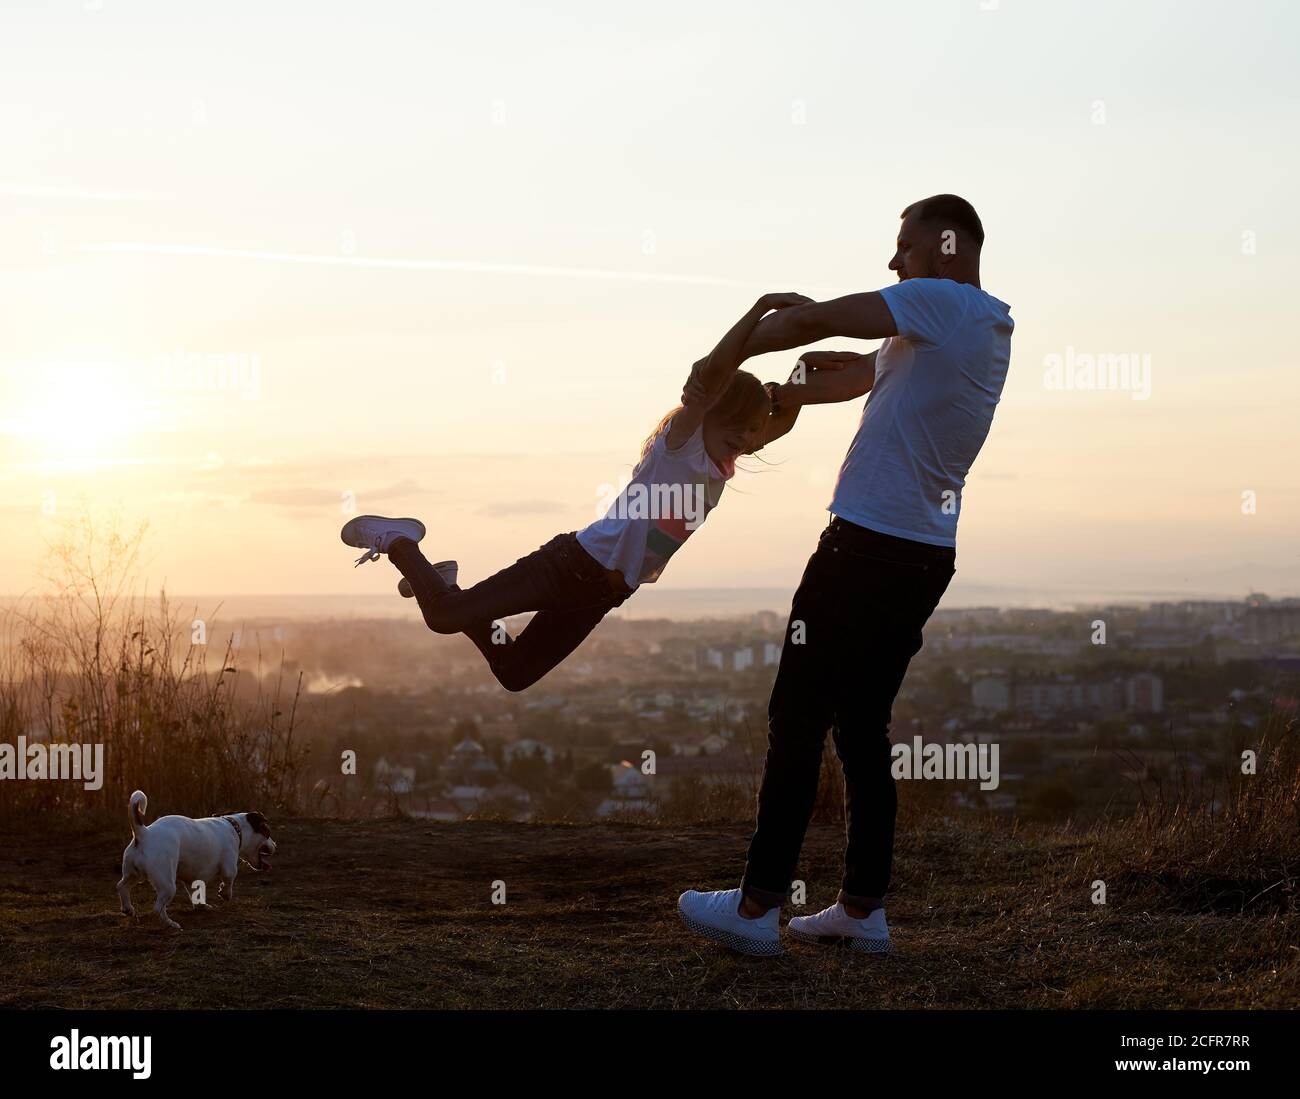 Silhouette d'un père balançant sa fille par les bras sur la colline sur le soleil couchant dans la banlieue, Jack russell terrier près d'eux, bel horizon sur l'arrière-plan, vue latérale Banque D'Images